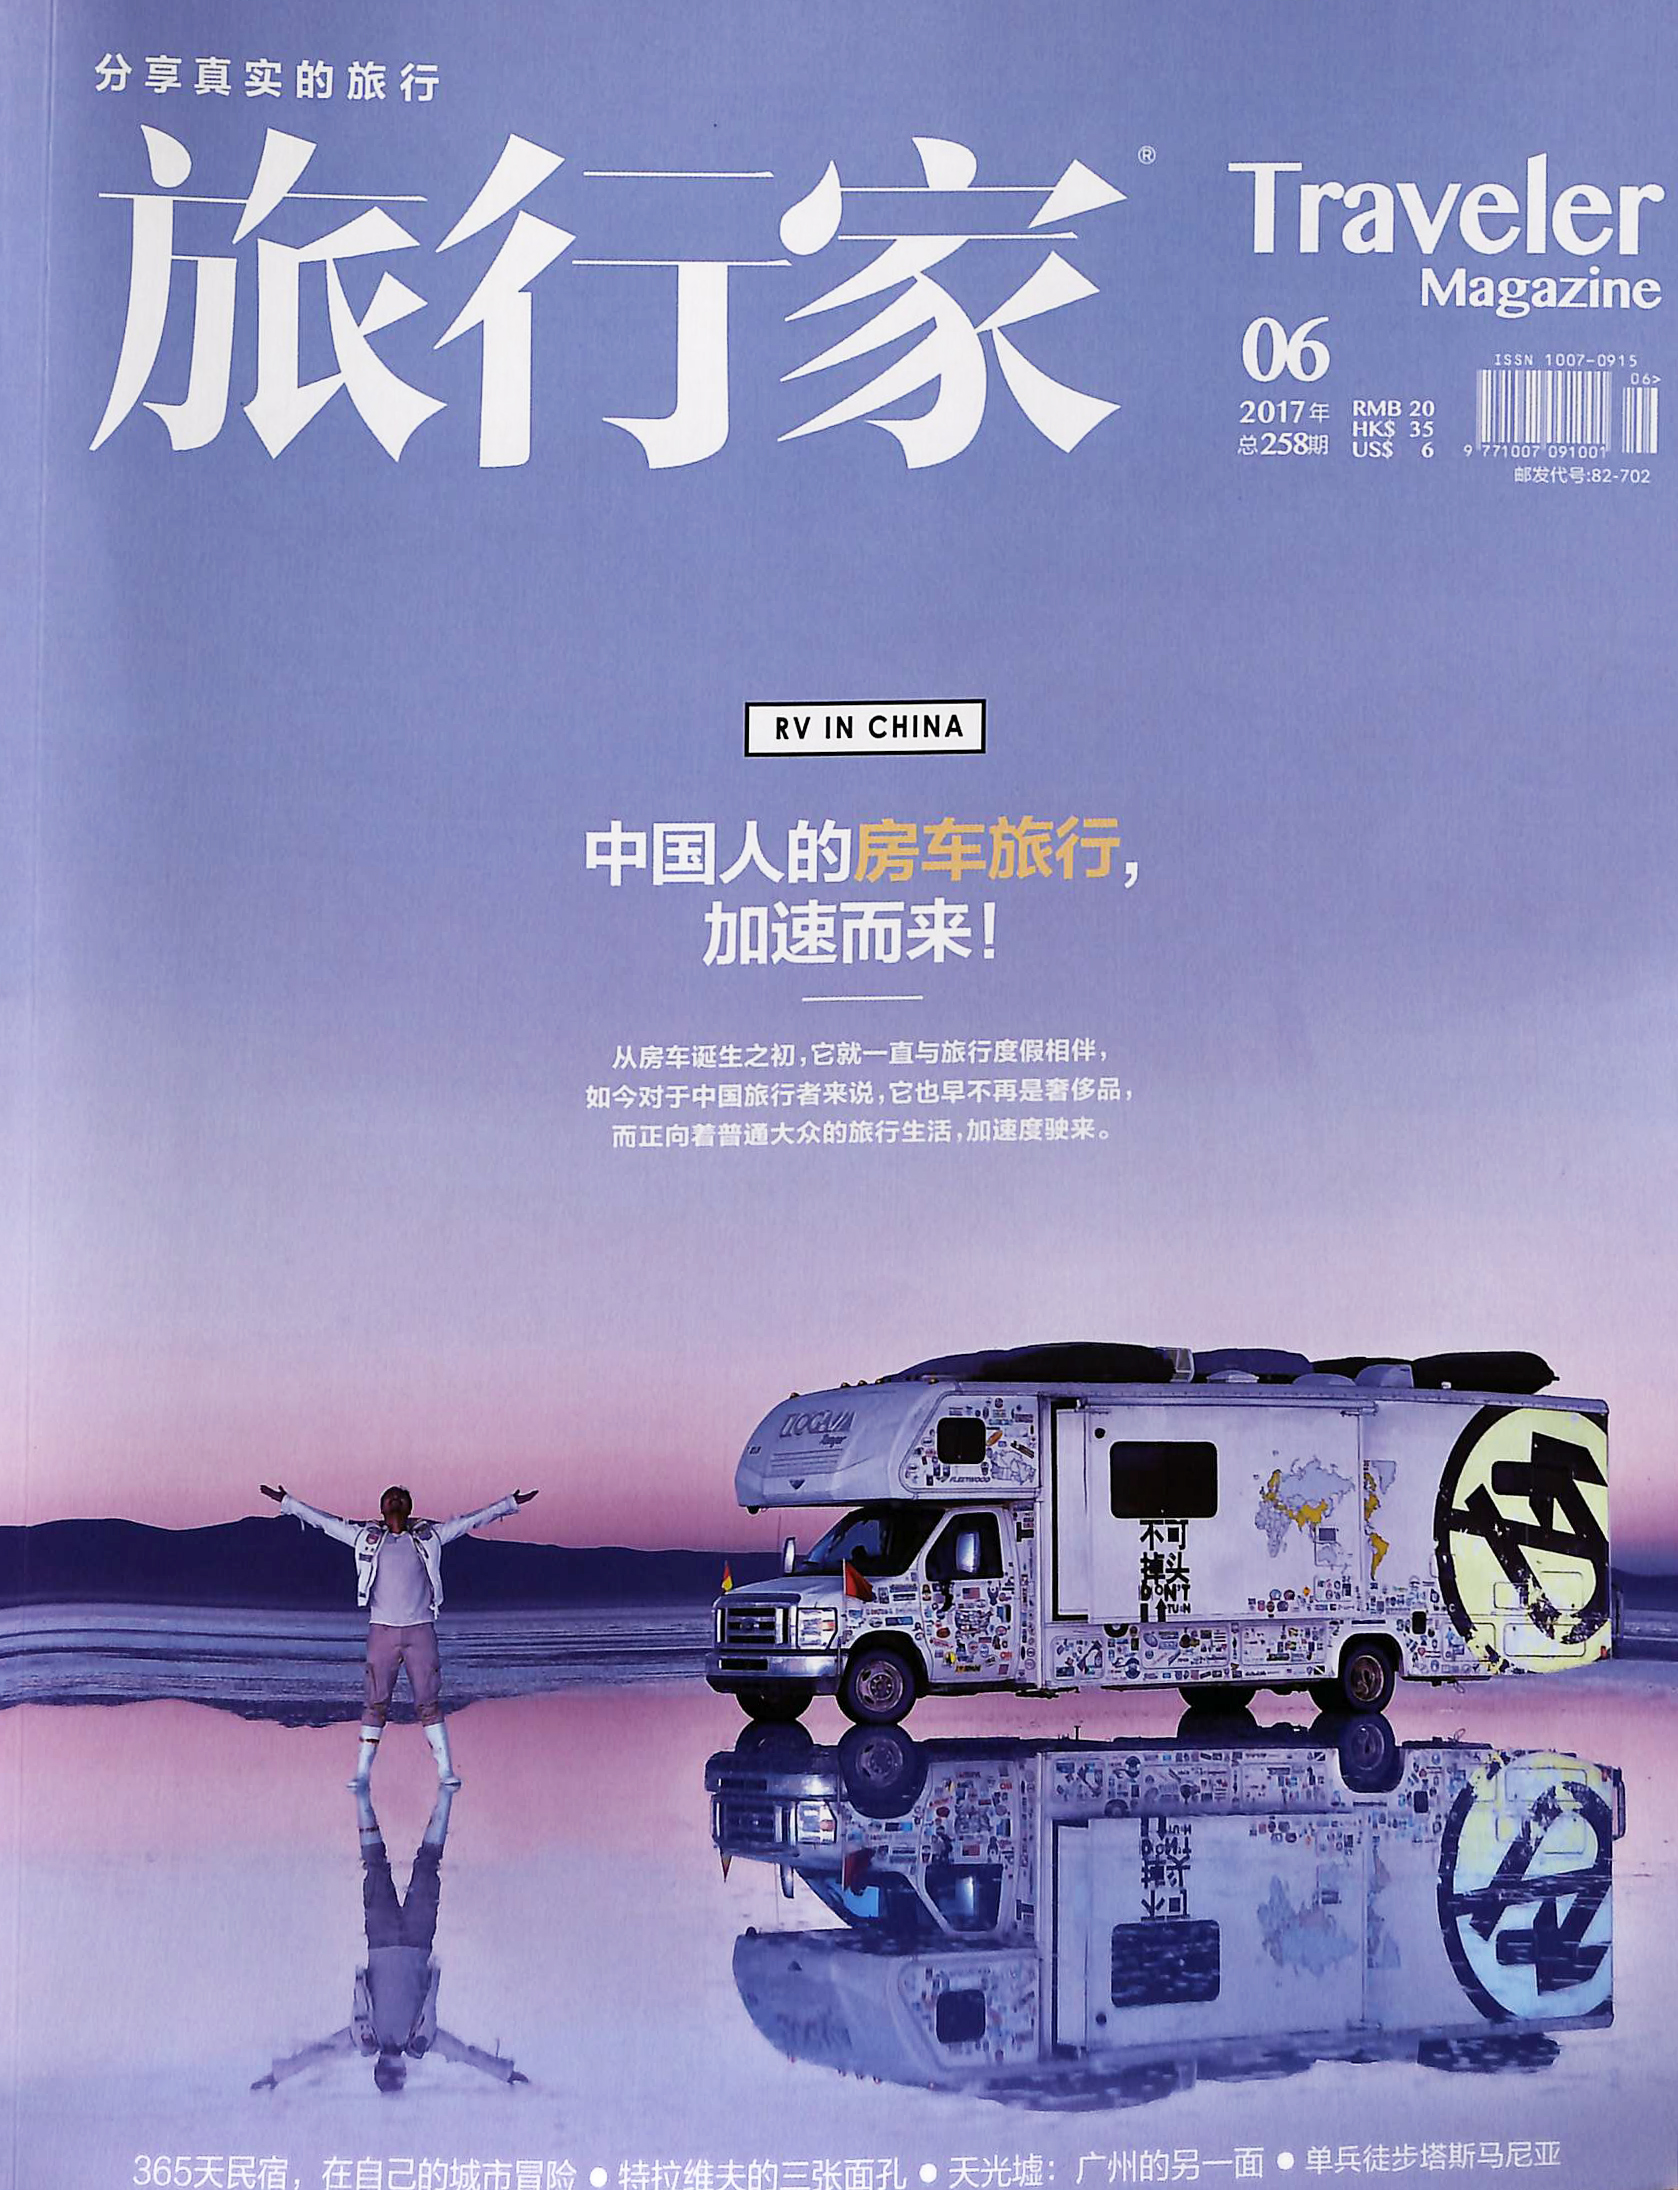 旅行者杂志封面图片